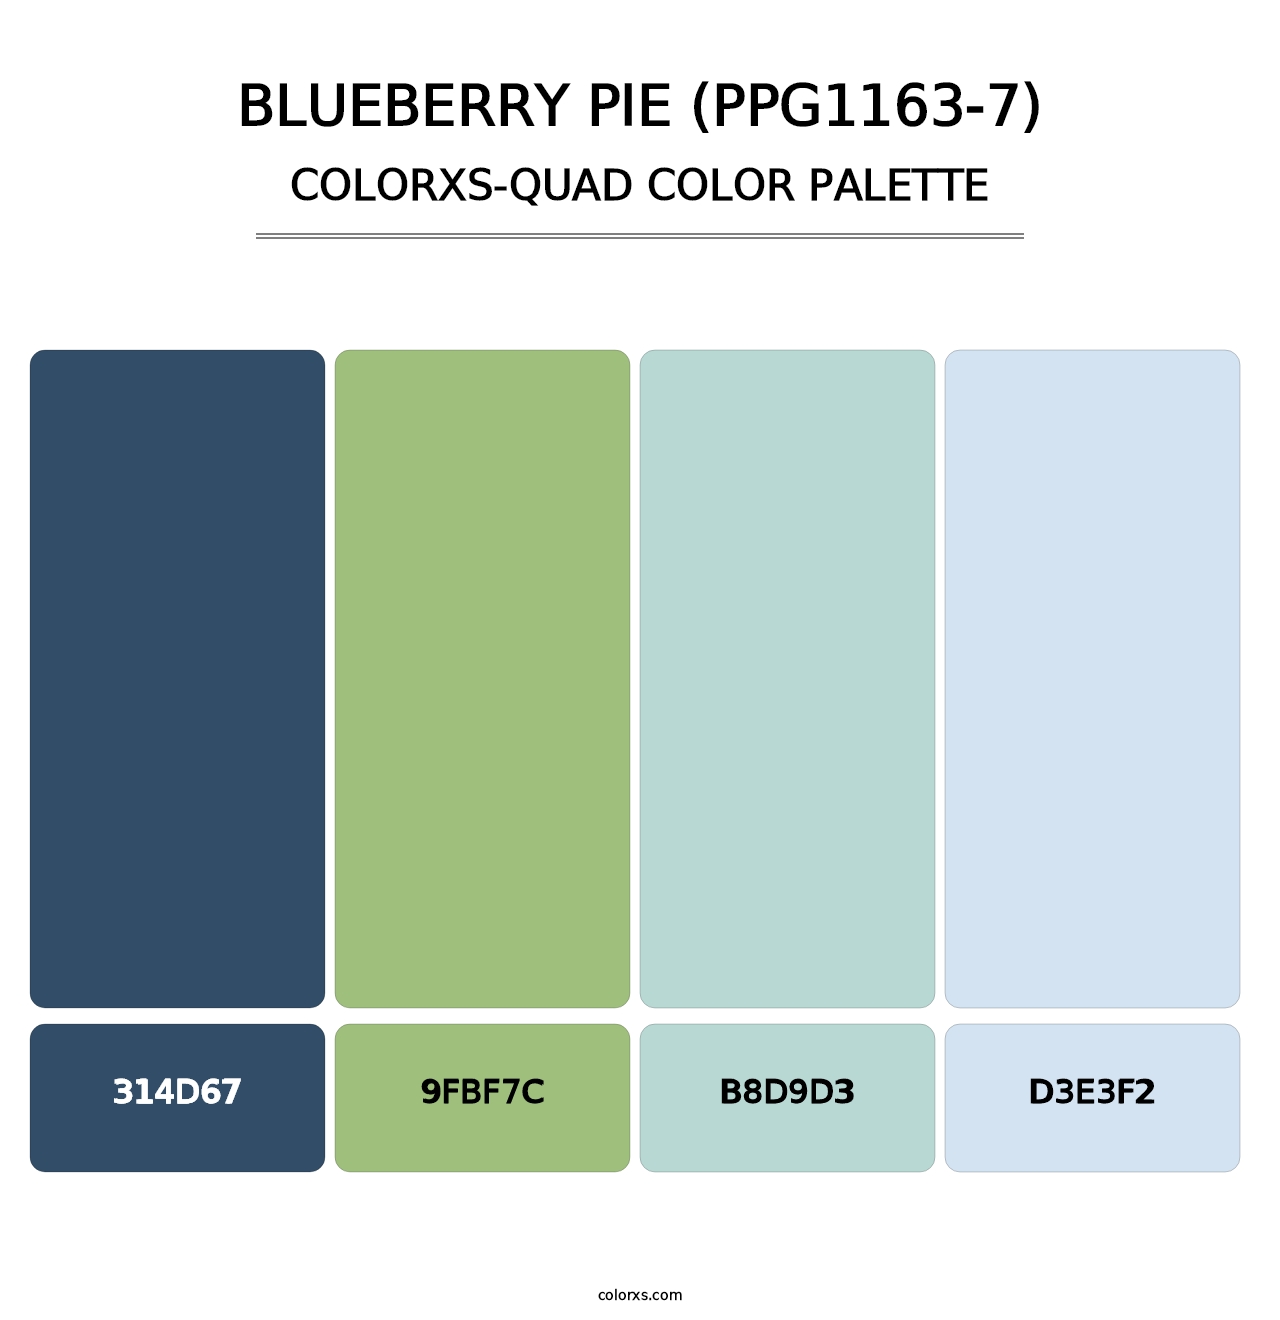 Blueberry Pie (PPG1163-7) - Colorxs Quad Palette